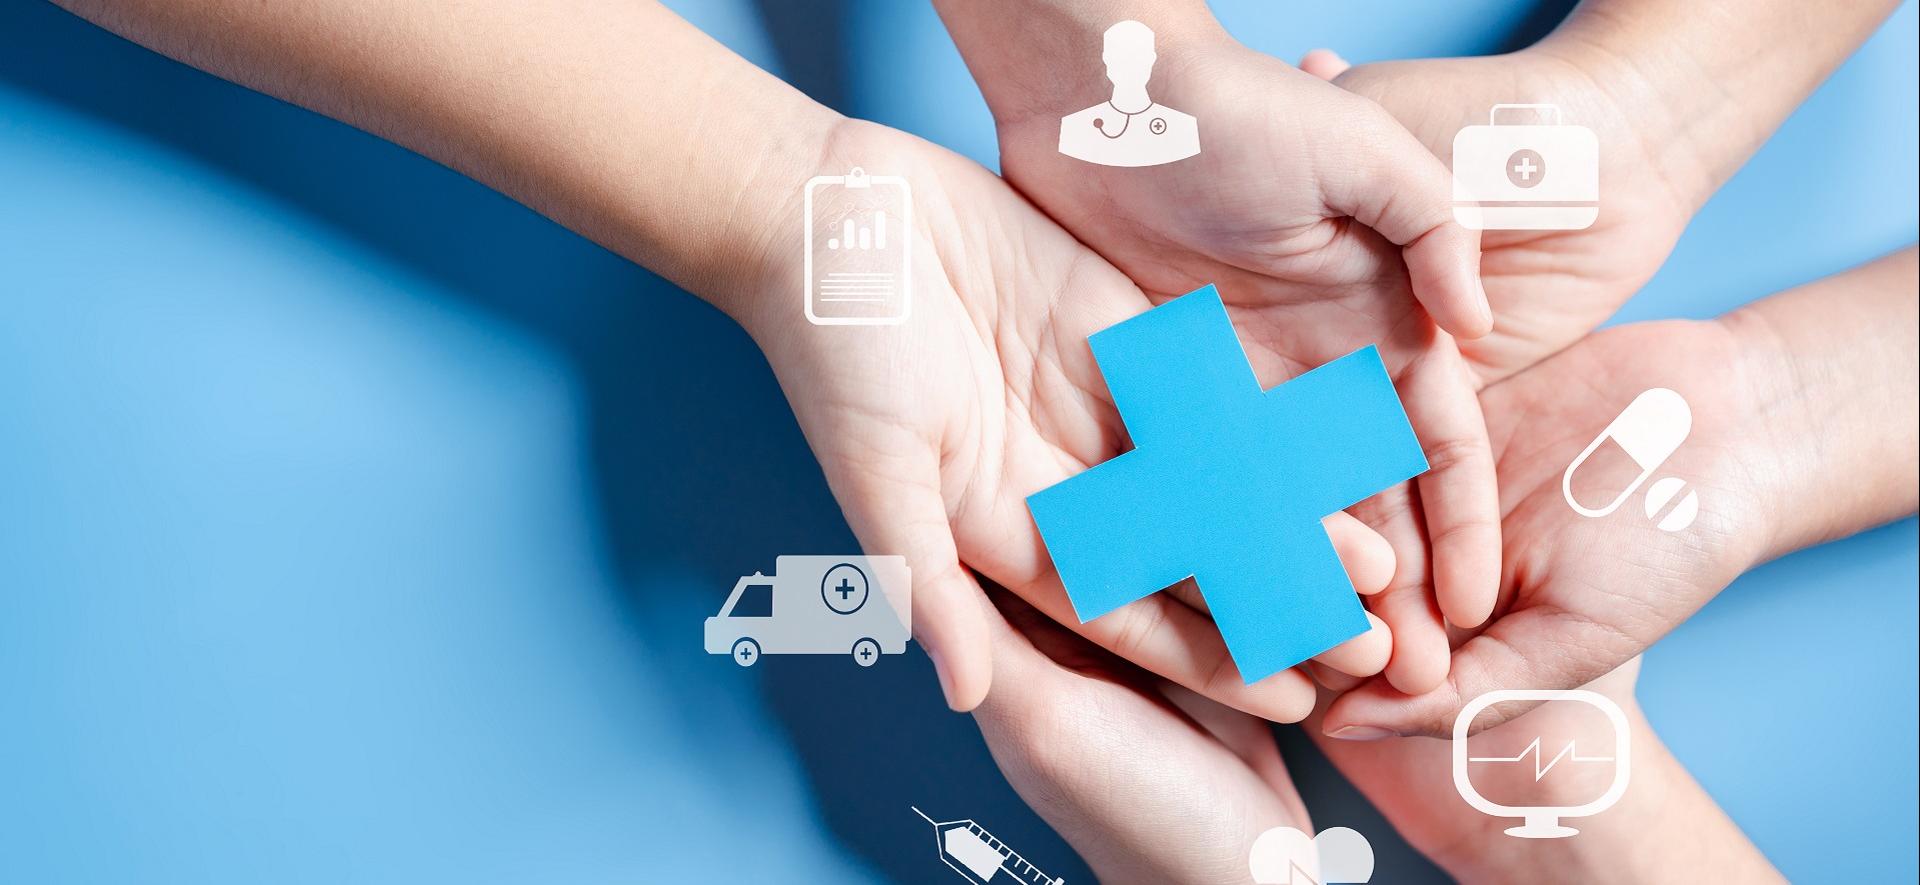 dłonie trzymające papierowy niebieski krzyż symbolizujący ochronę zdrowia, wokół multimedialne e-usługi 